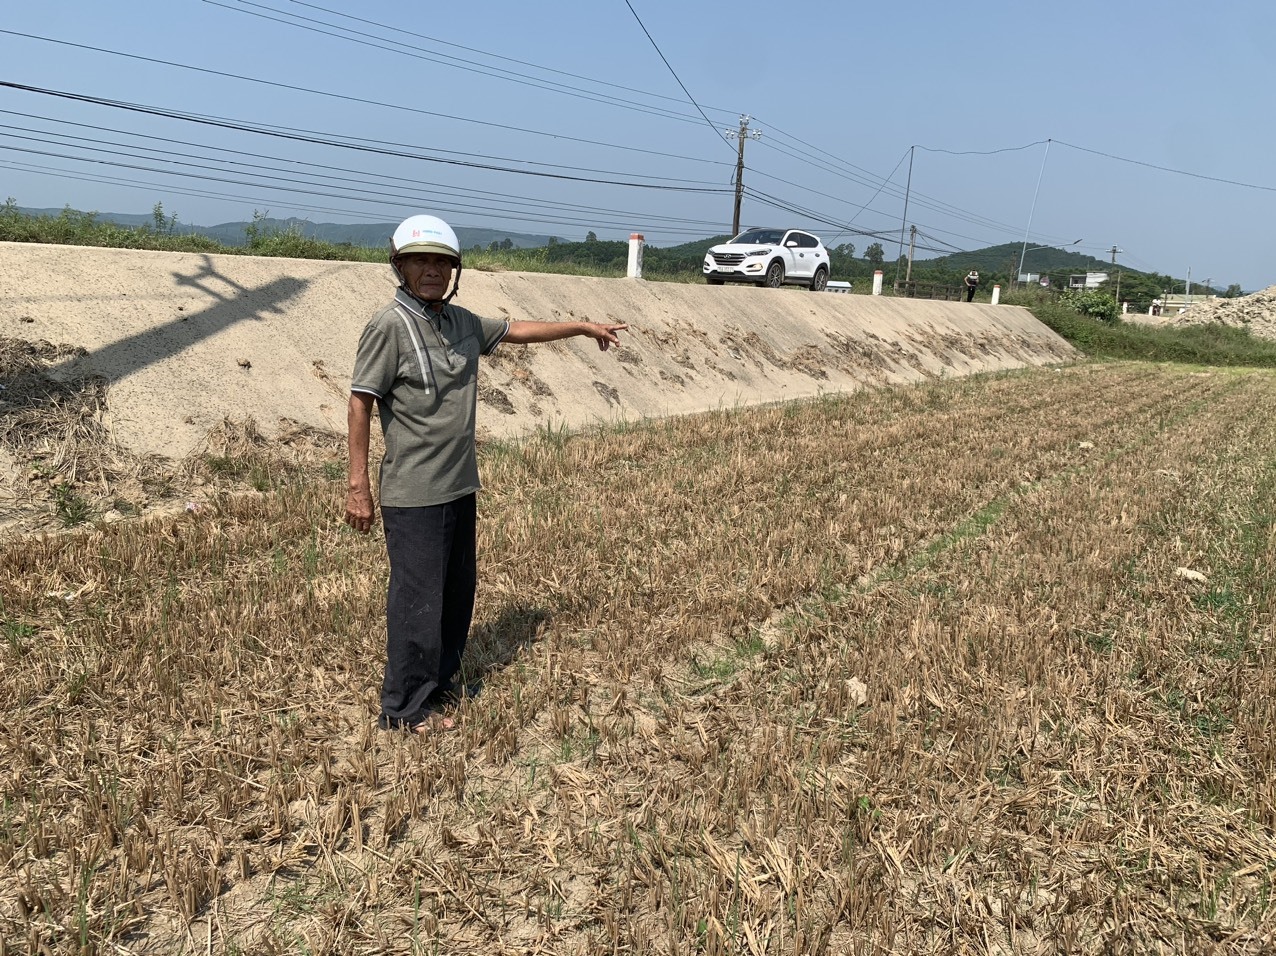 Ông Võ Thanh Bình (78 tuổi) ở phường Phổ Ninh bên thửa đất nông nghiệp nằm ở vị trí đắc địa nhưng giá đền bù, hỗ trợ quá thấp, ngoài ra ông cho rằng công tác đền bù, hỗ trợ tồn tại nhiều điểm bất hợp lý nên ông không chấp thuận giao đất. Ảnh: Ngọc Viên